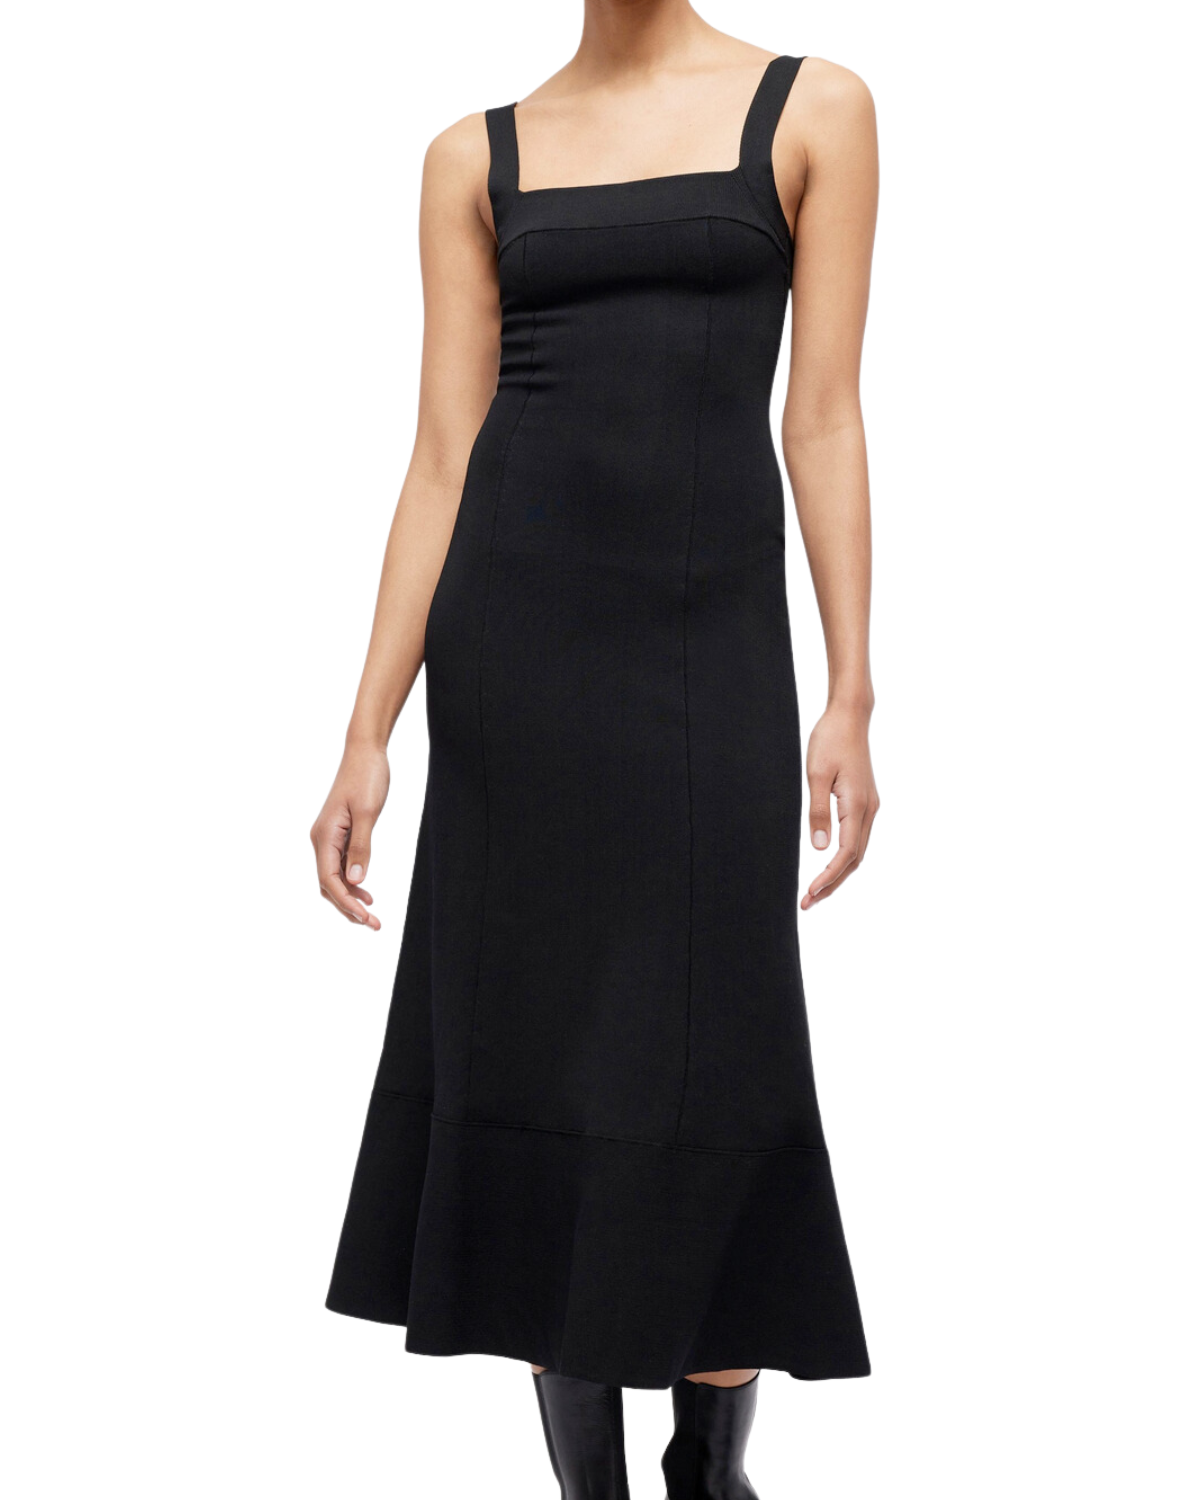 Ingrid Square Neck Midi Dress (Black)